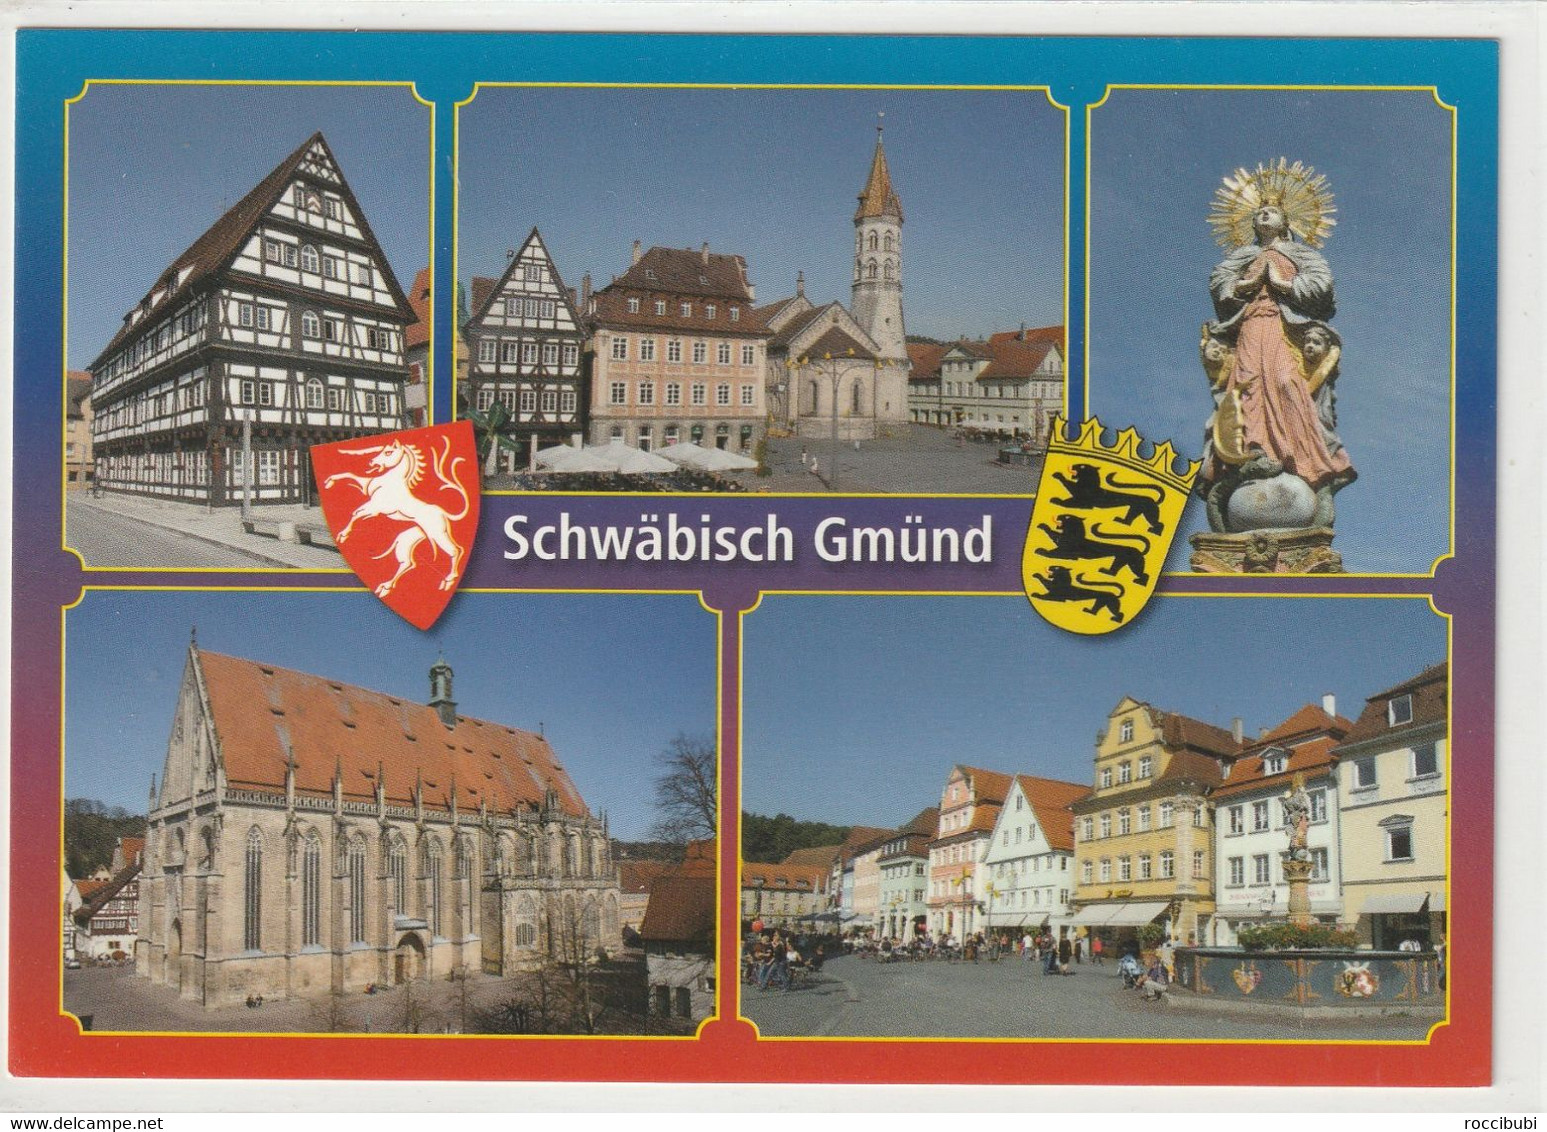 Schwäbisch Gmünd, Baden-Württemberg - Schwäbisch Gmünd